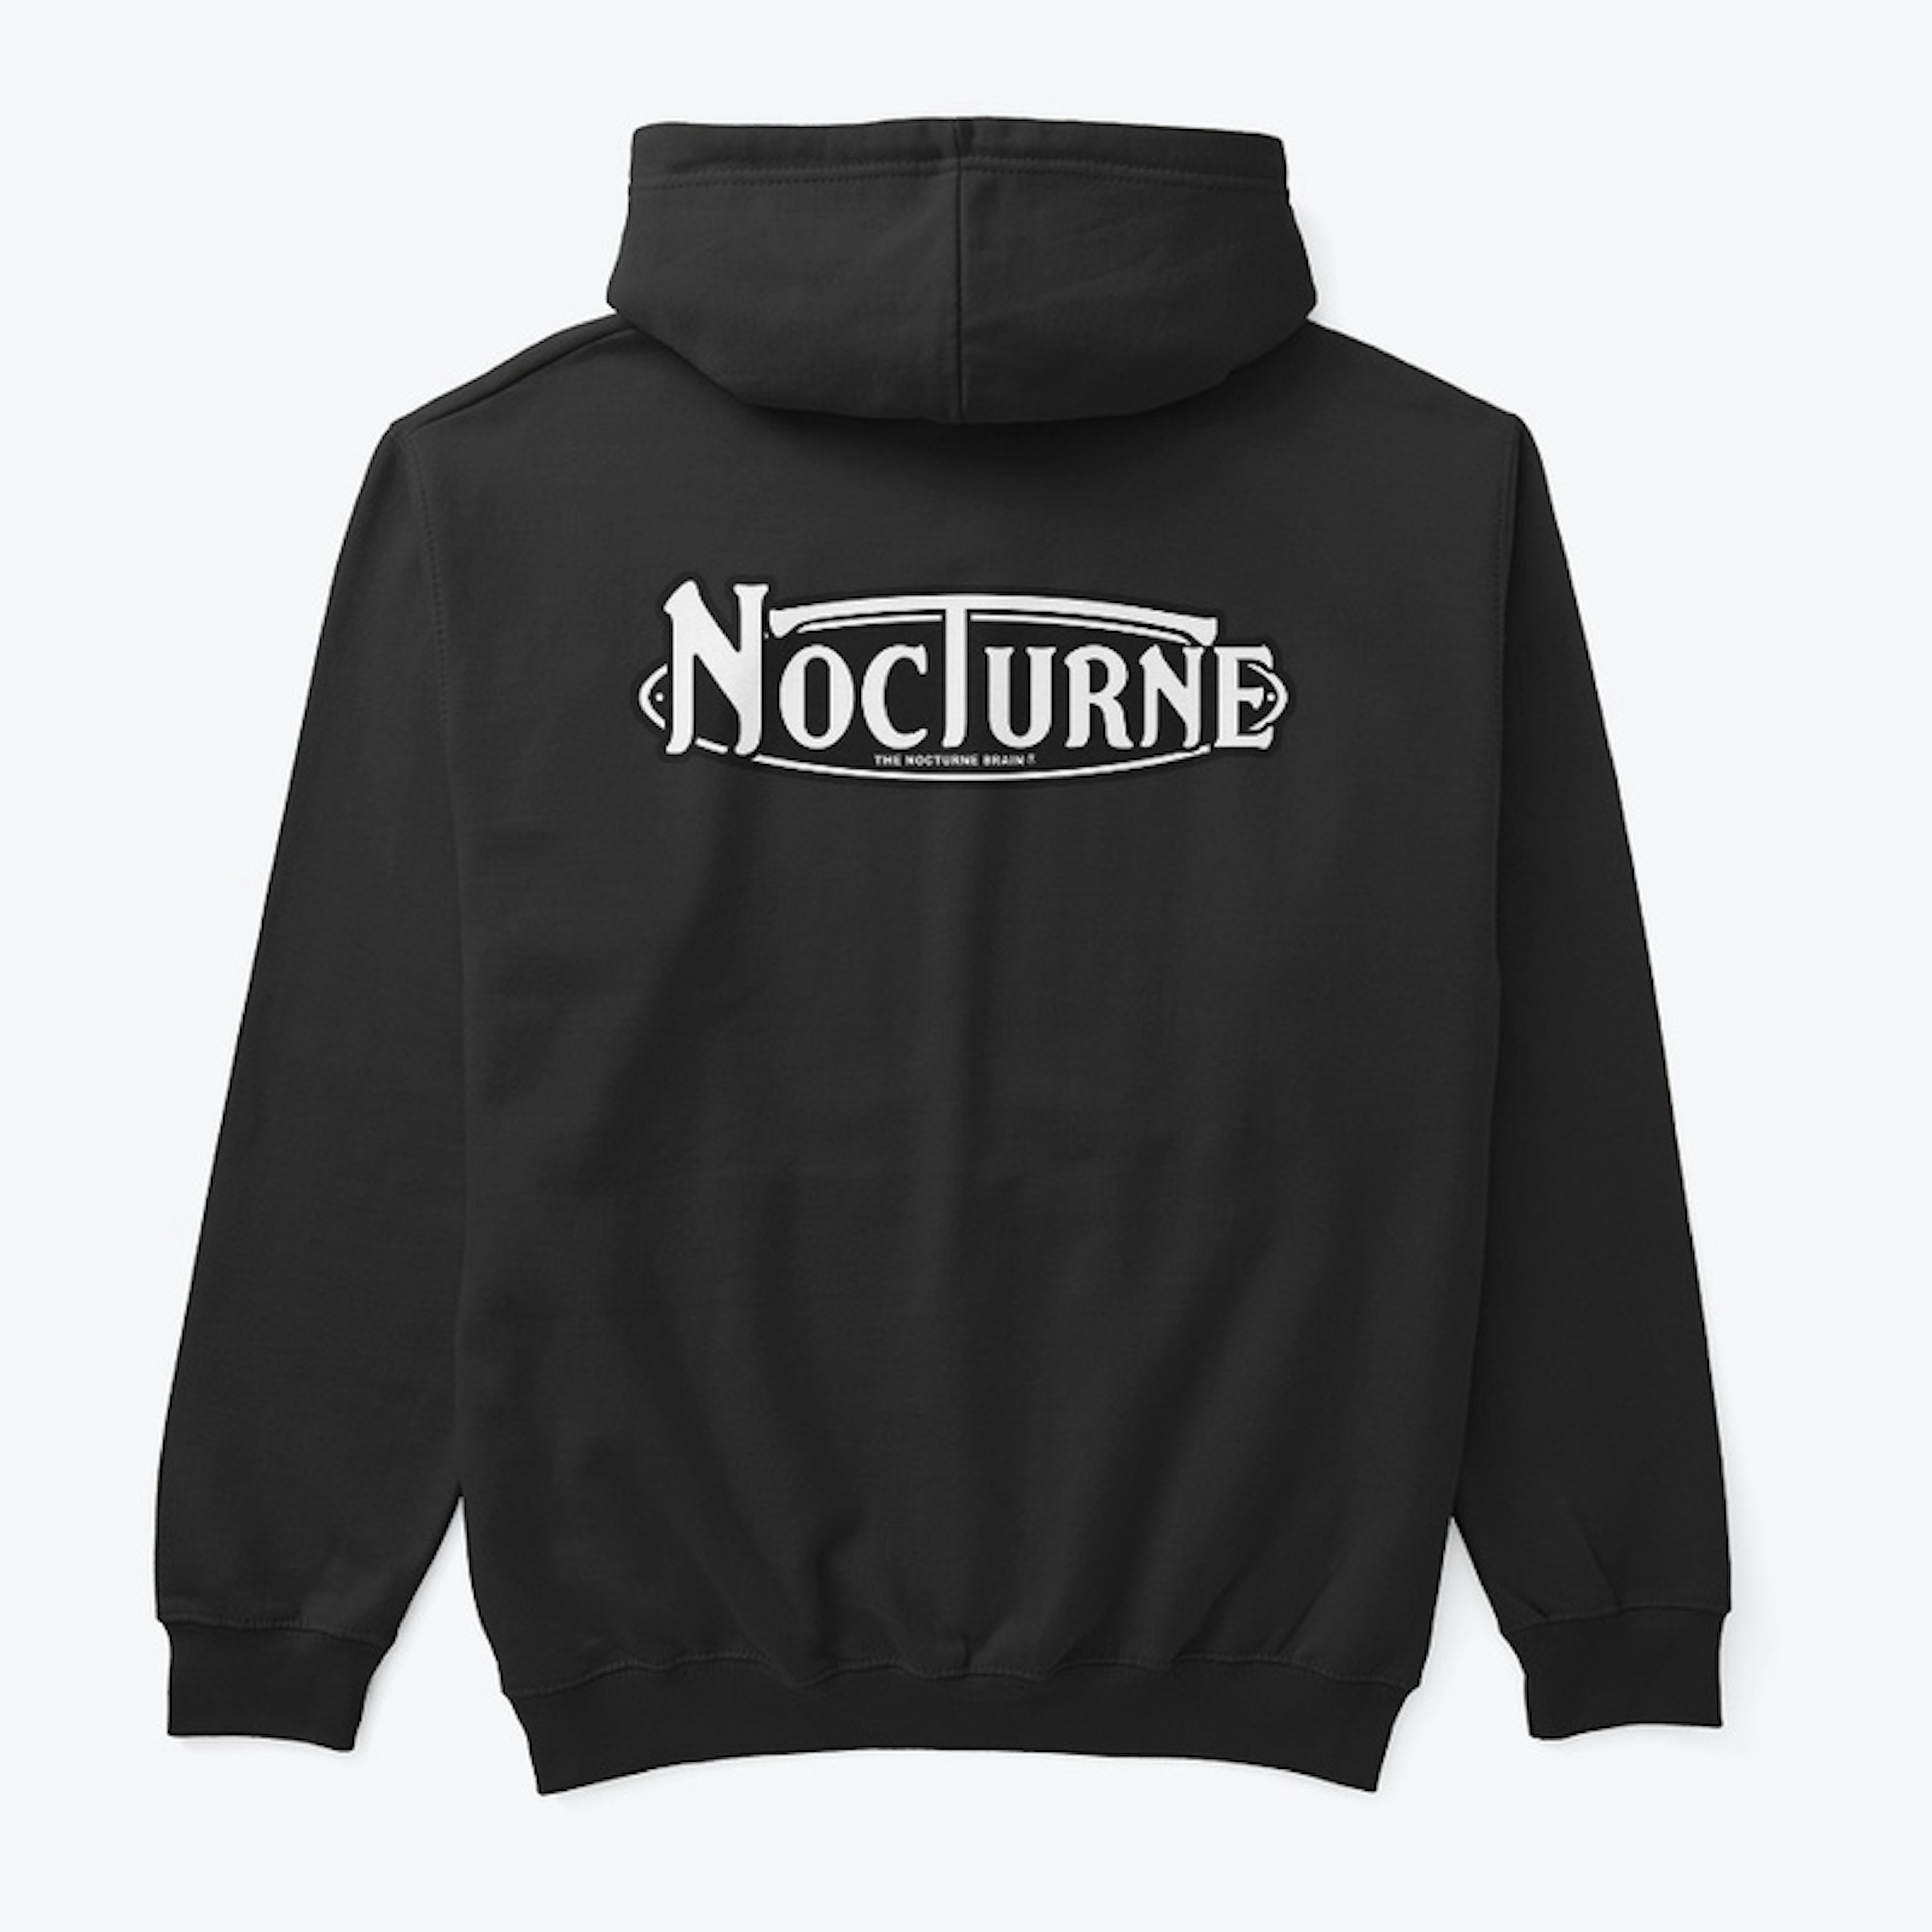 Nocturne Hoodie for men & women